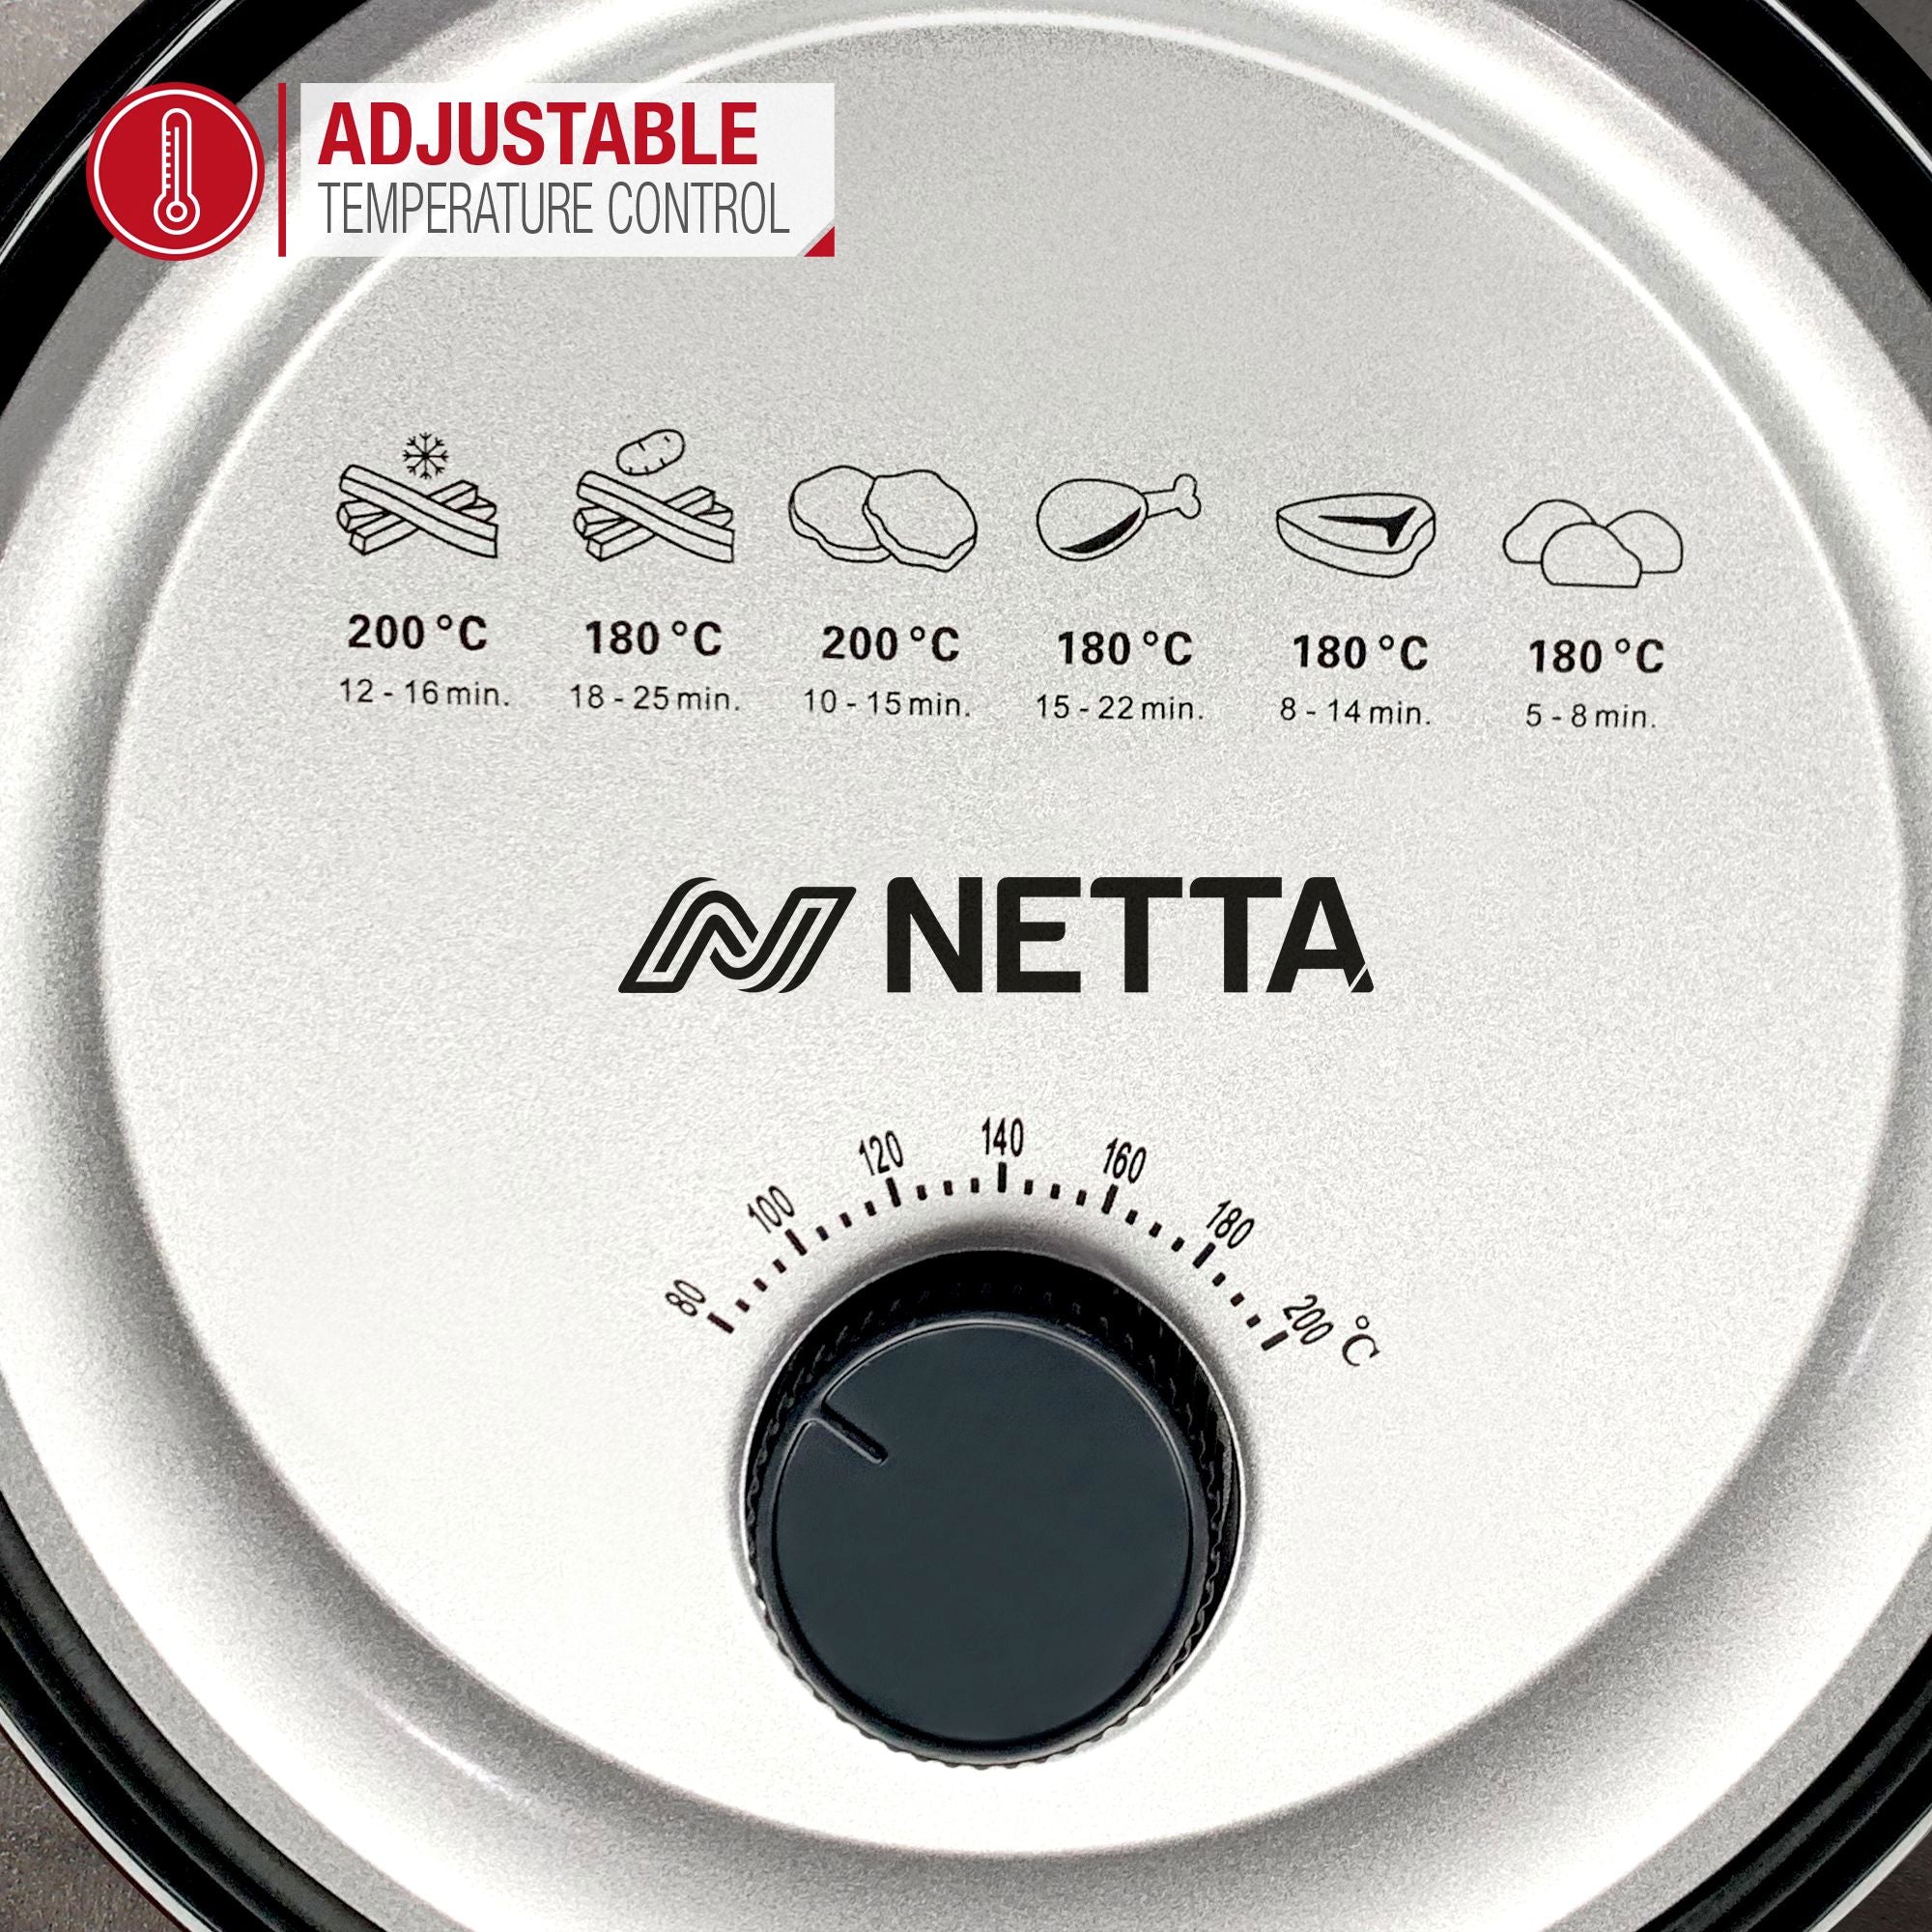 NETTA 3.5L Air Fryer